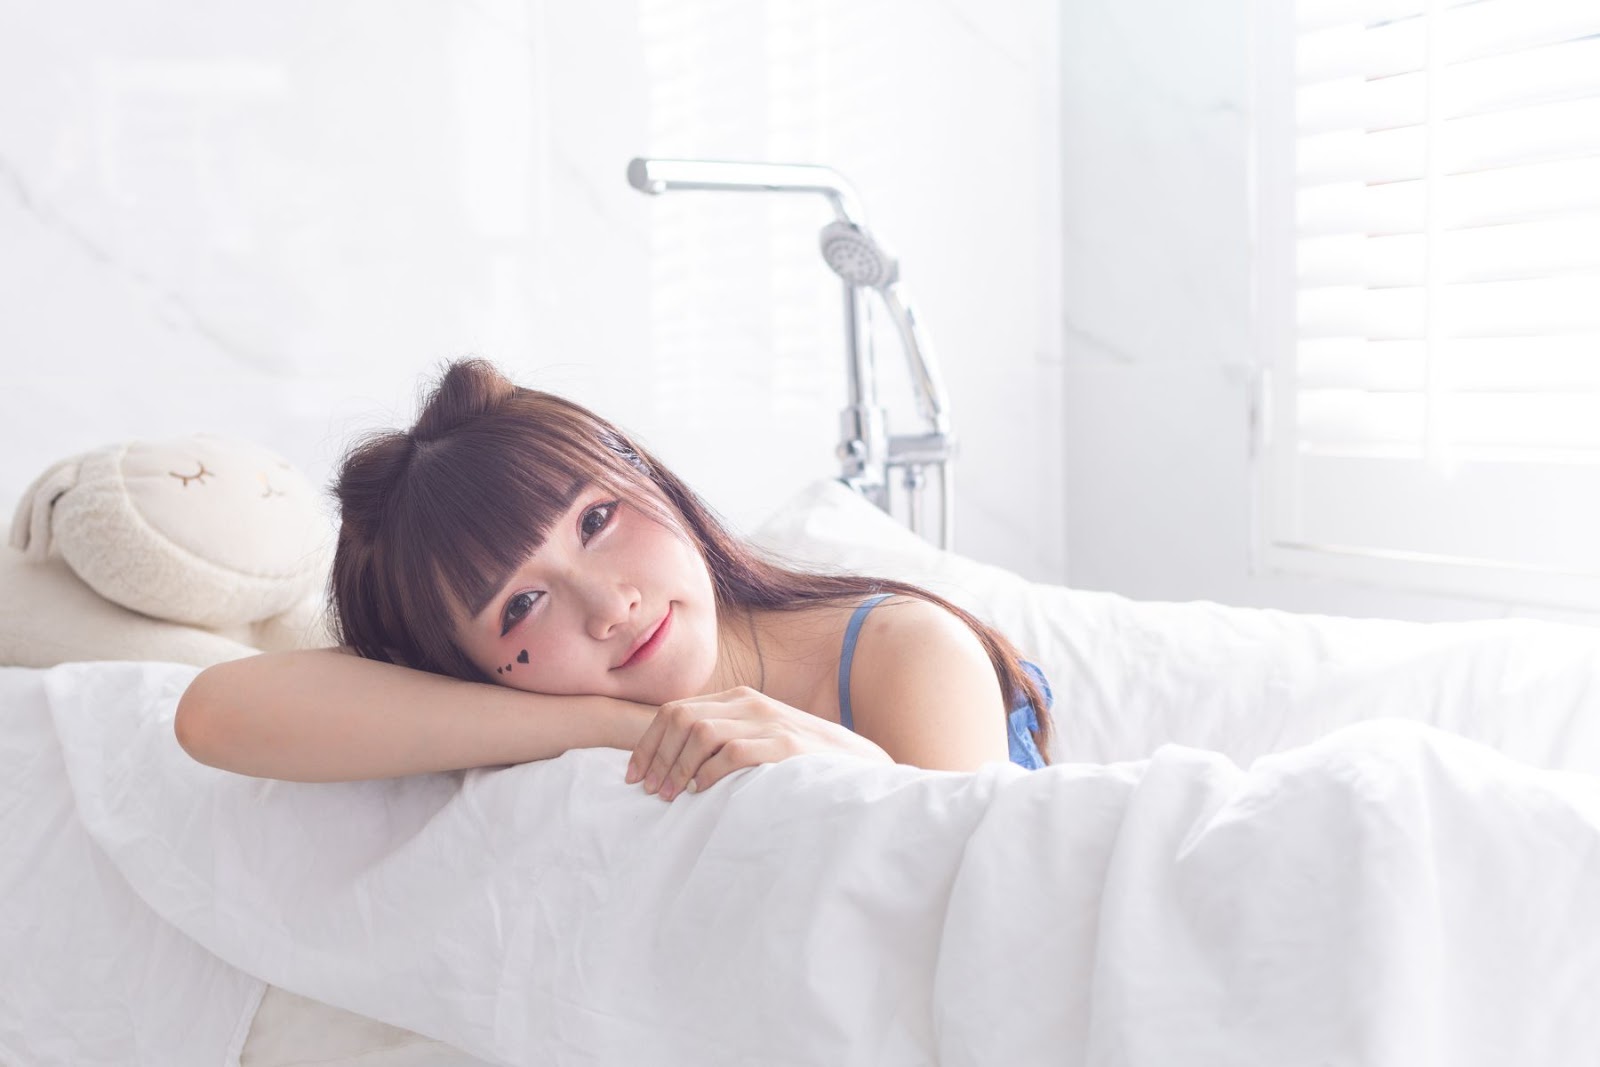 Qiao Qiao Er - 喬喬兒 - 2018.09.21 - Bathroom Bed View - TruePic.net